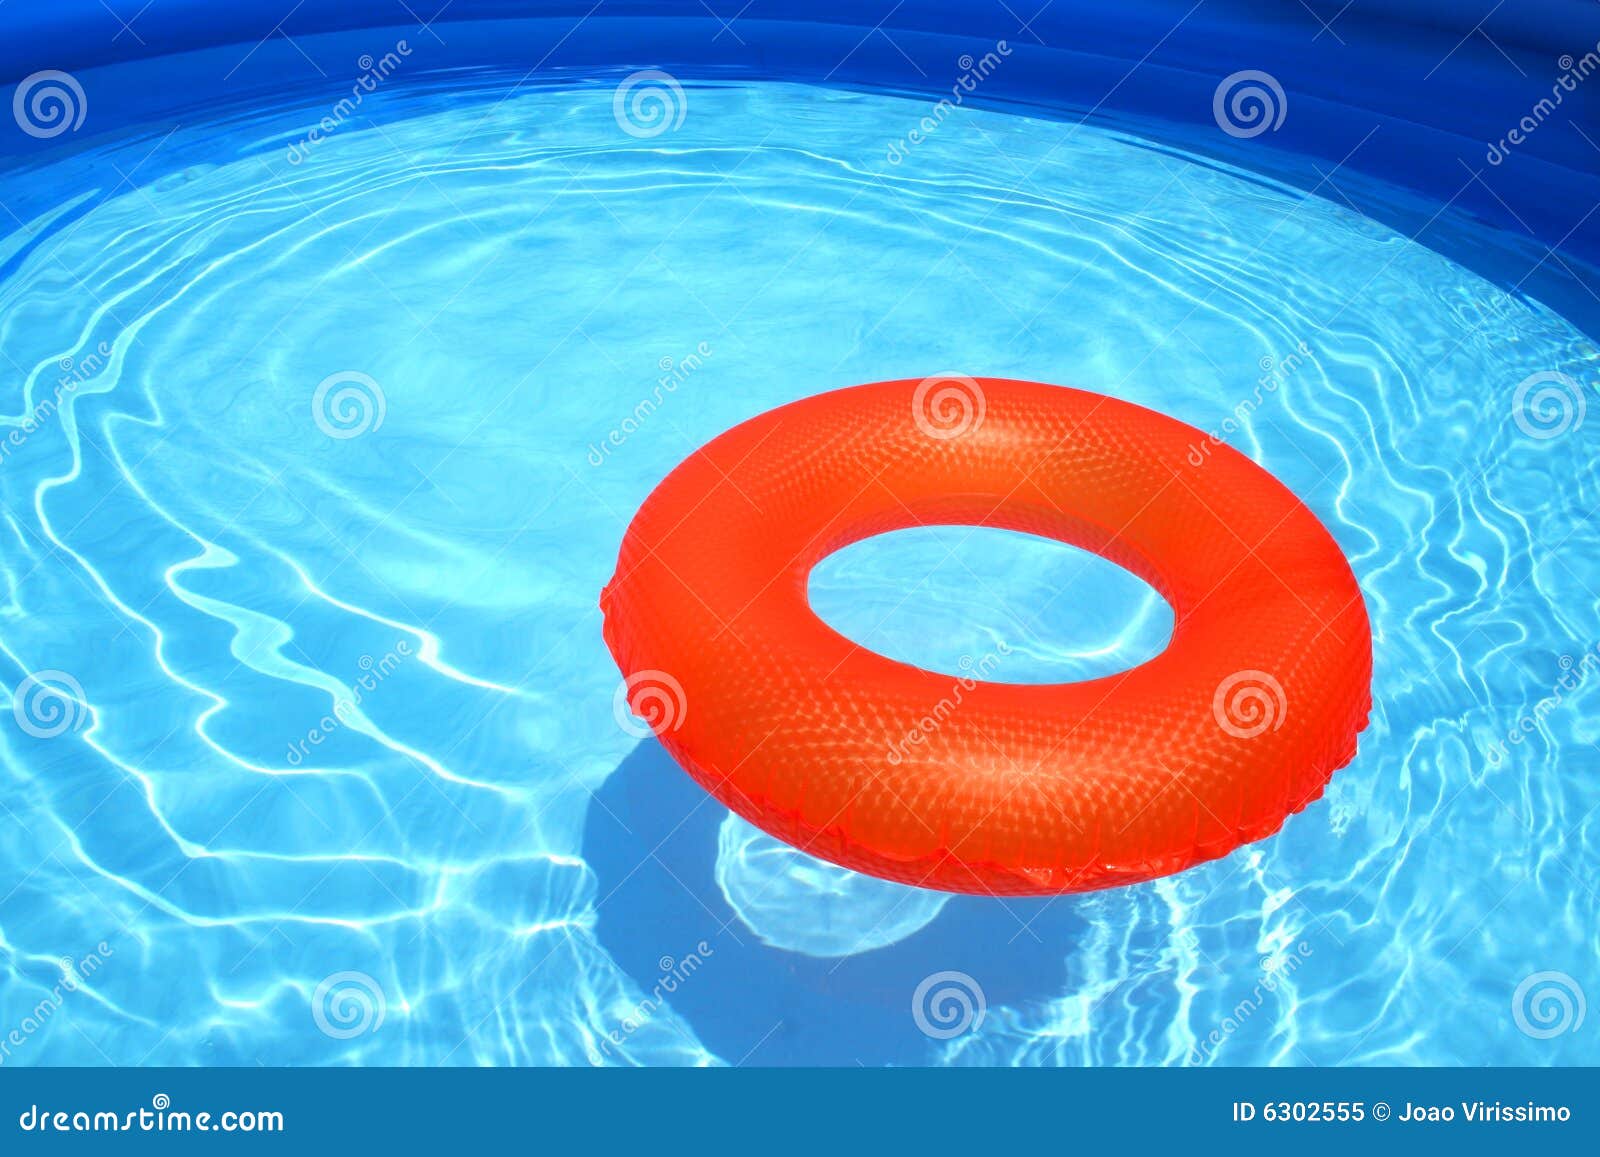 Banzai Jr. 5-Piece Swim Set (Vest,Arm Floats,Swim Ring,Pool Seat & Kick  Board) - JCPenney